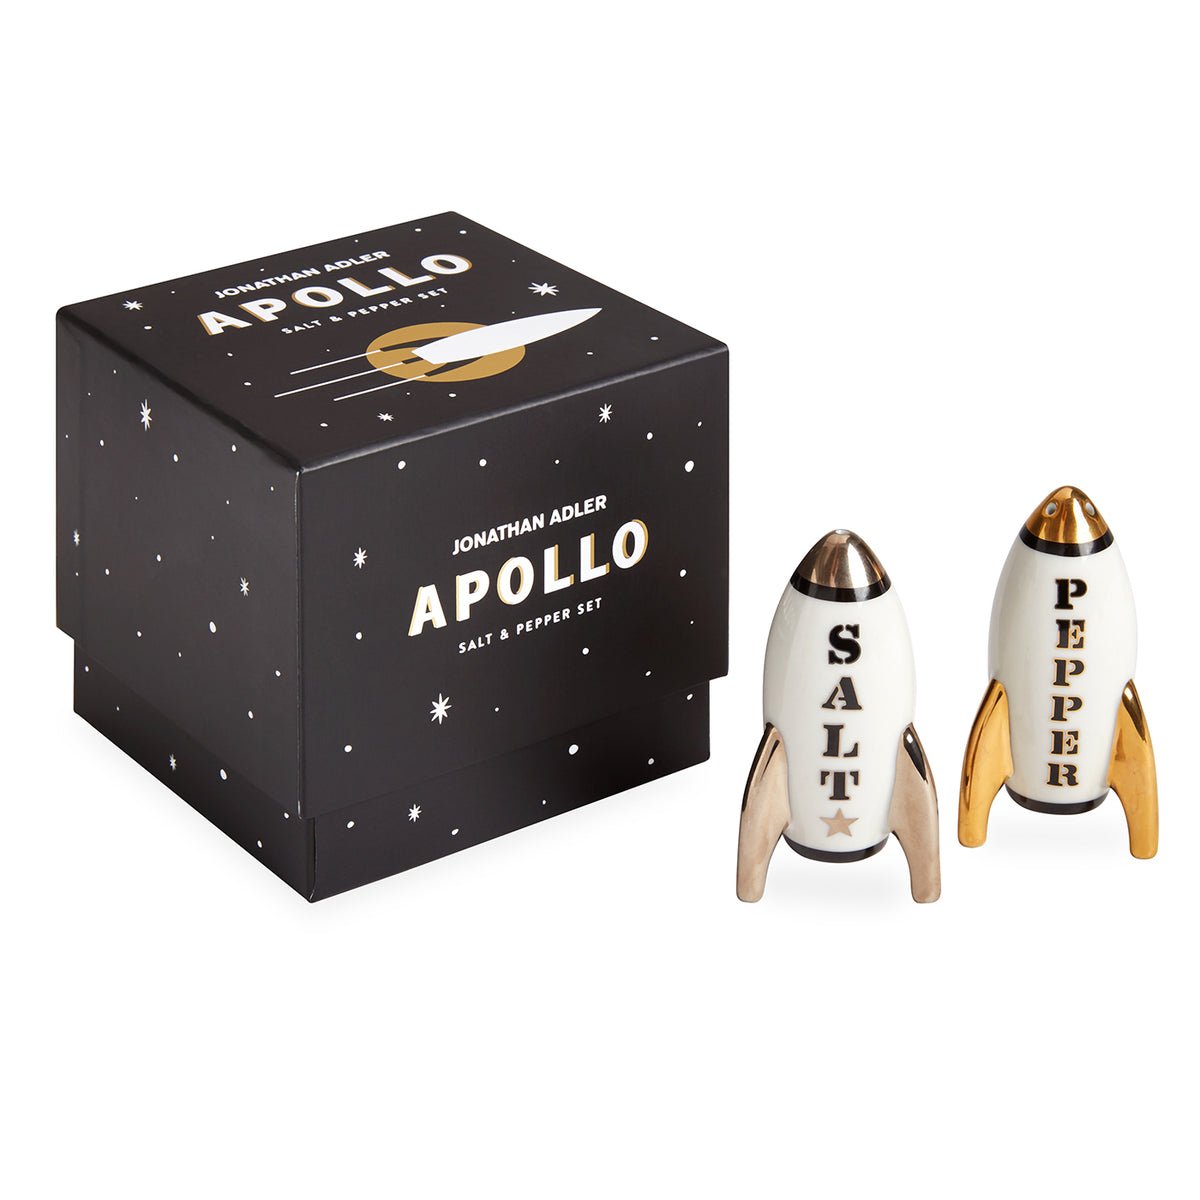 Apollo Salt & Pepper Set by Jonathan Adler